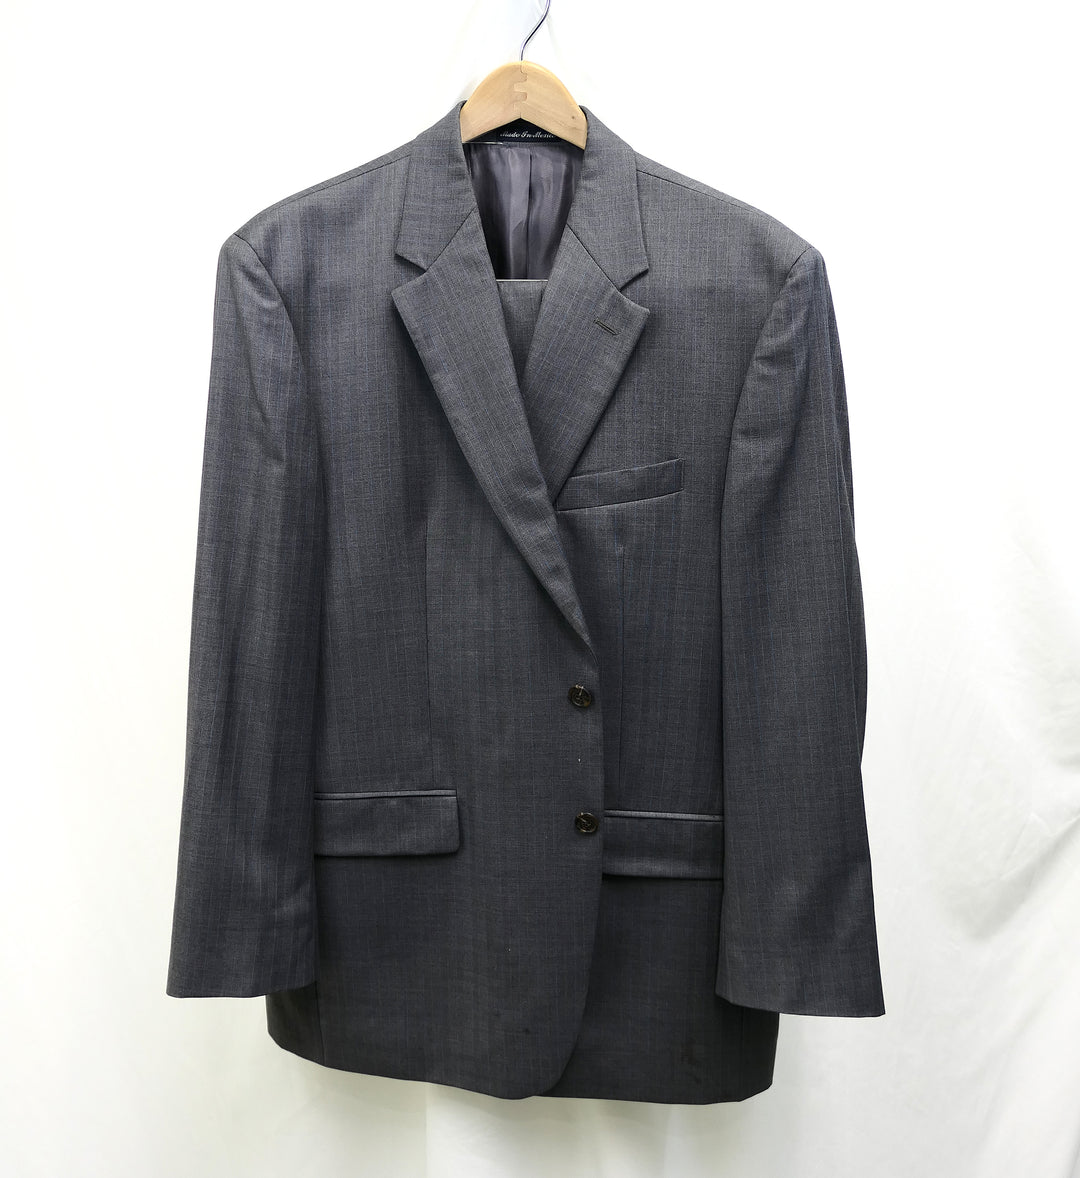 Lauren Grey Wool Suit - Size 44R/38